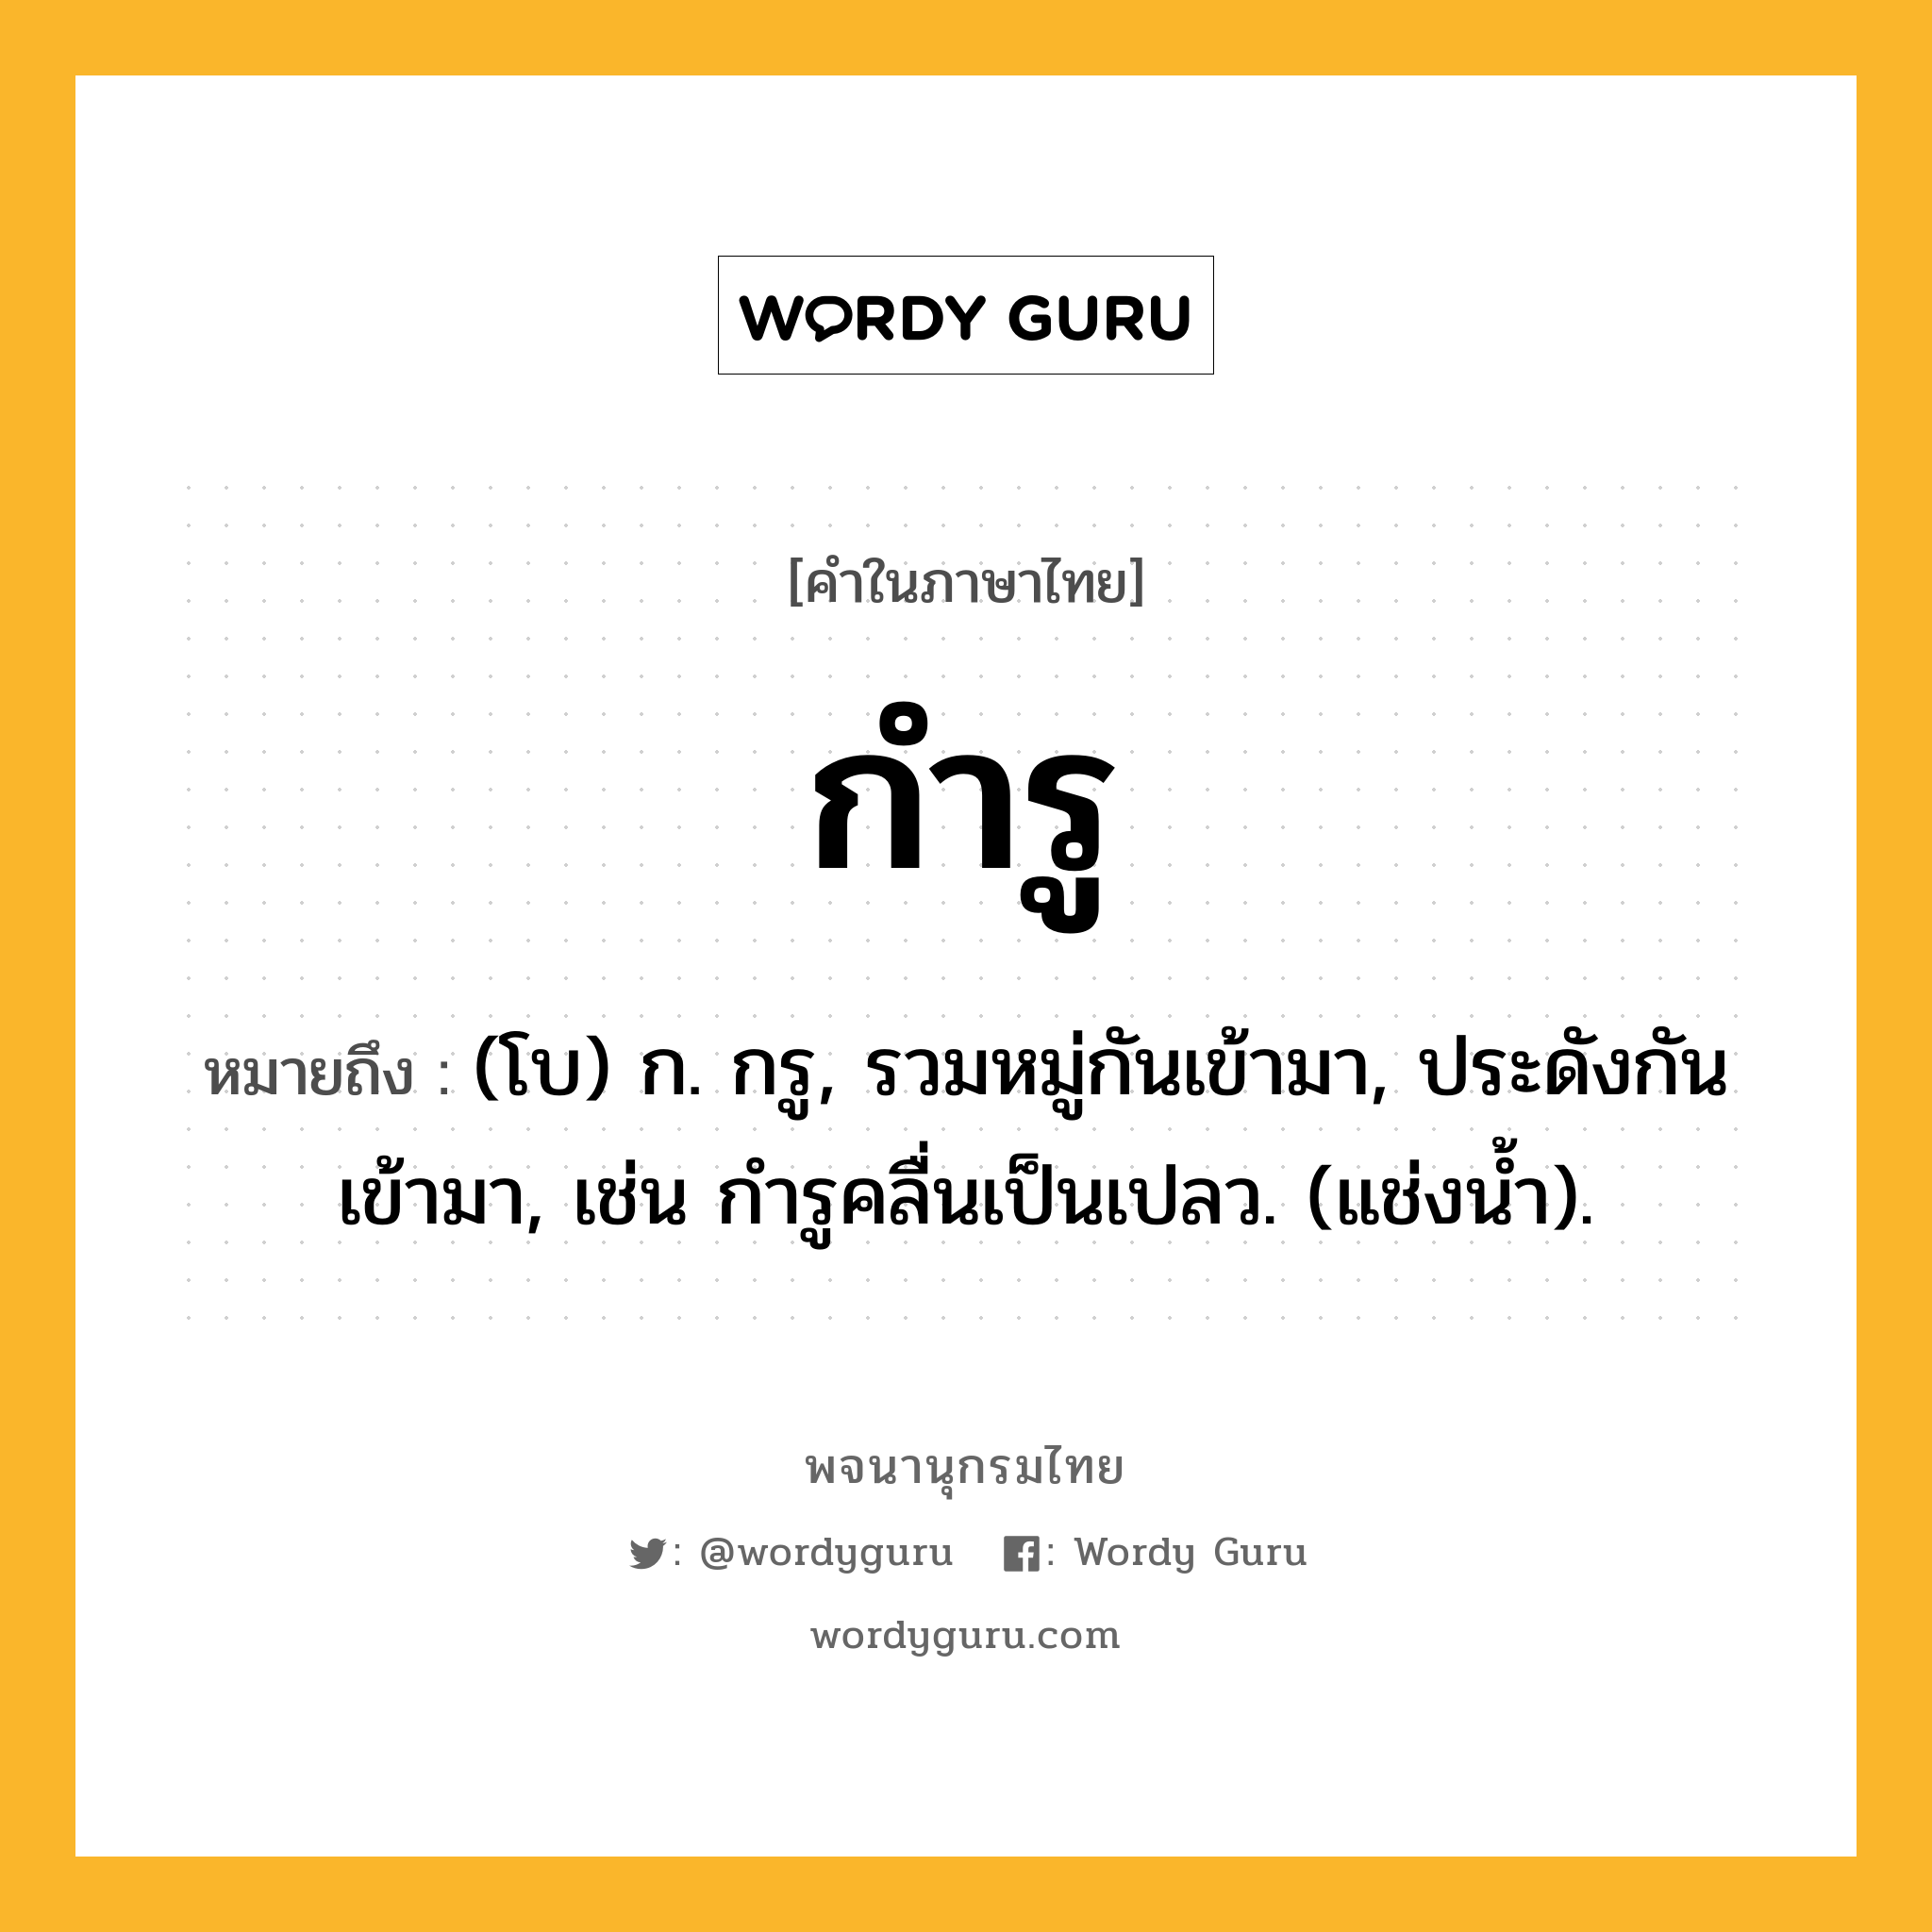 กำรู หมายถึงอะไร?, คำในภาษาไทย กำรู หมายถึง (โบ) ก. กรู, รวมหมู่กันเข้ามา, ประดังกันเข้ามา, เช่น กํารูคลื่นเป็นเปลว. (แช่งนํ้า).